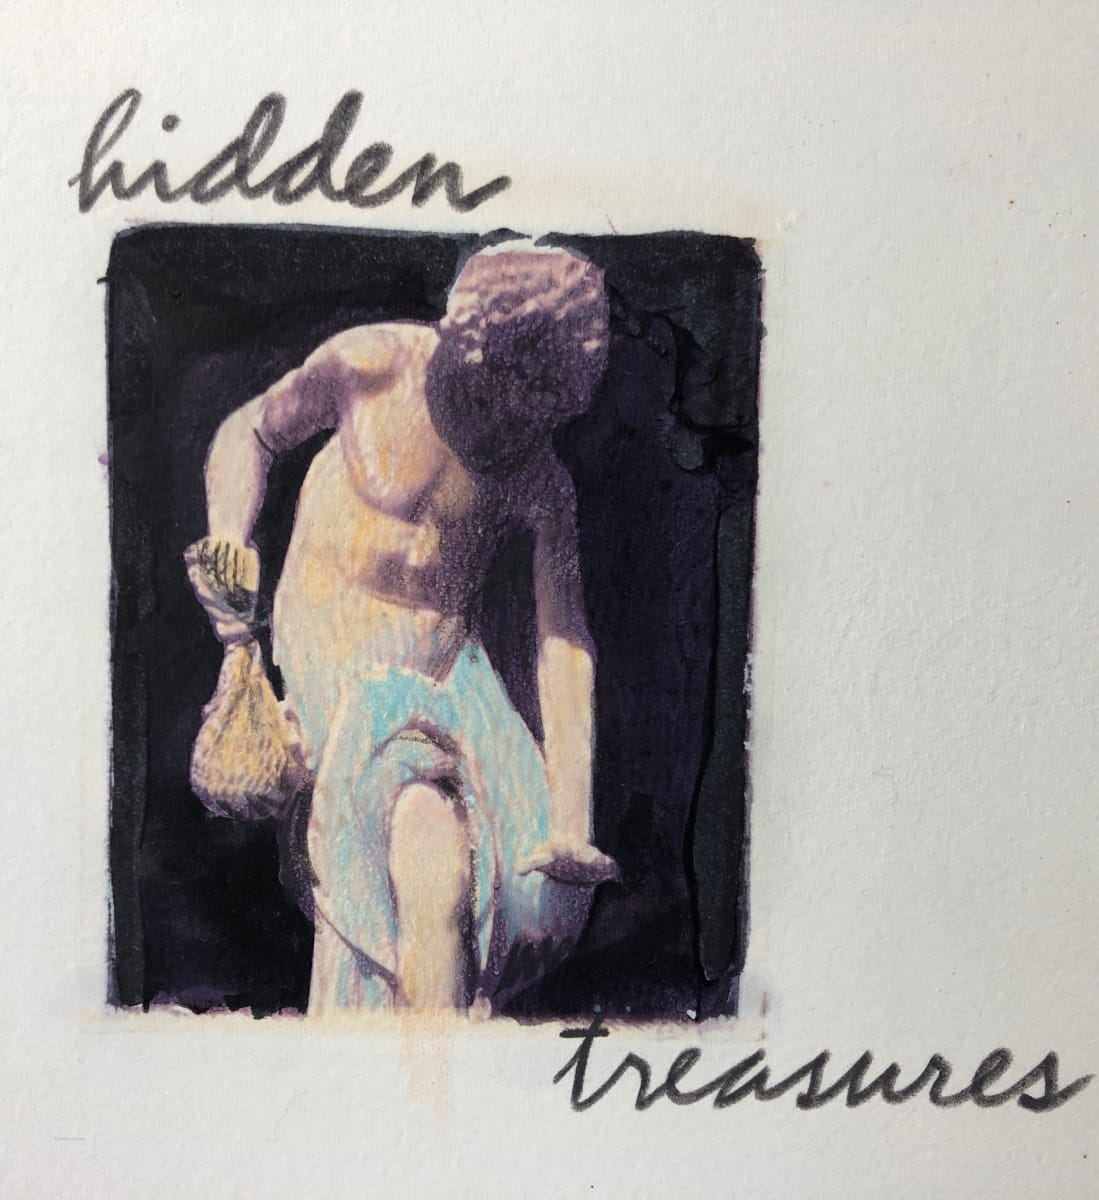 Hidden_TreasuresPHILLIPSCURRAN_uufhqd_5 by Karen Phillips~Curran 